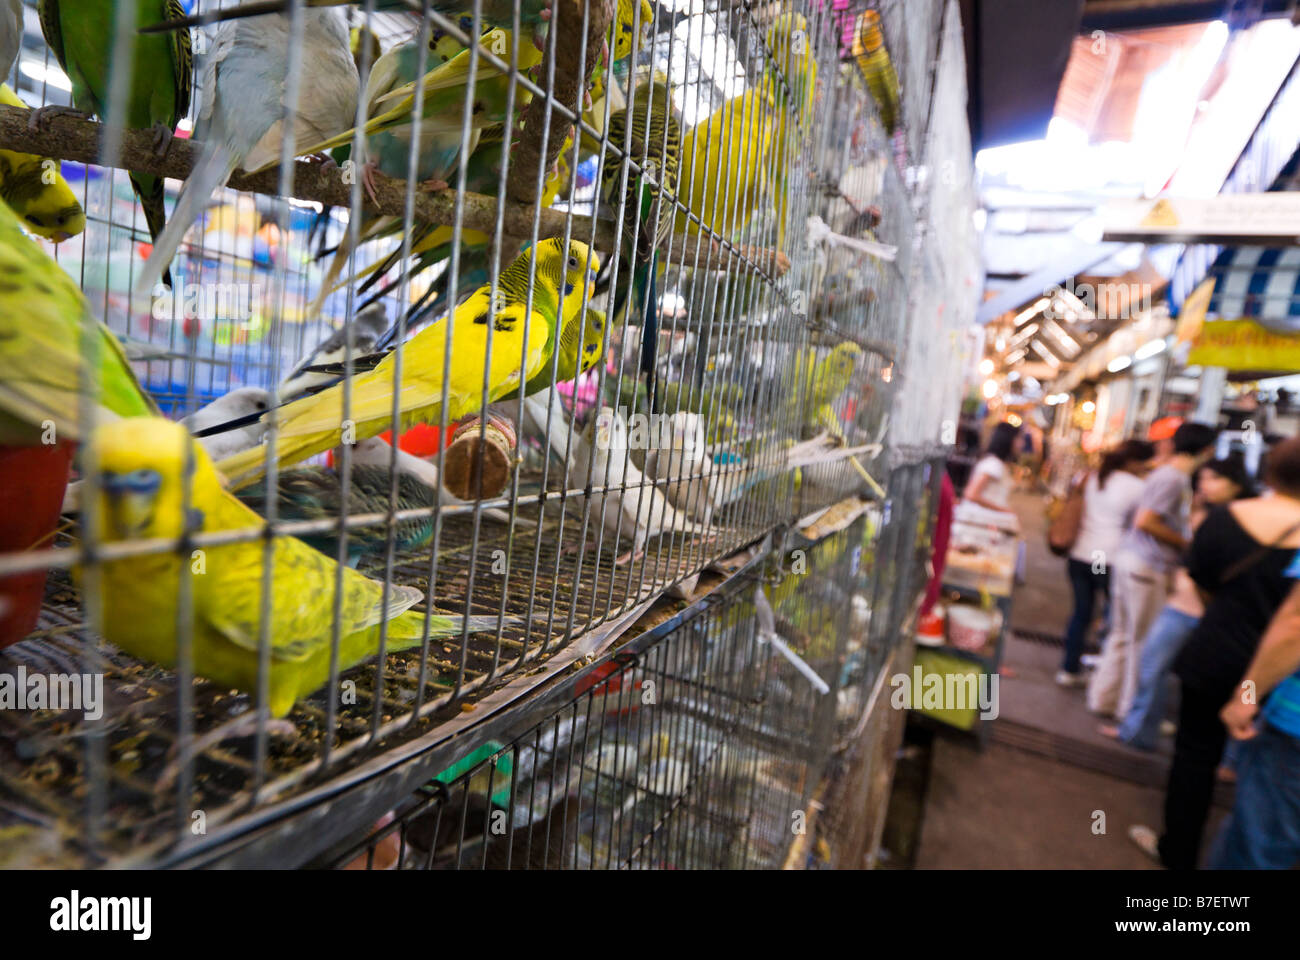 Vögel im Käfig für den Verkauf auf einer Tierhandlung Stall am Chatuchak Weekend Market in Bangkok Thailand Stockfoto